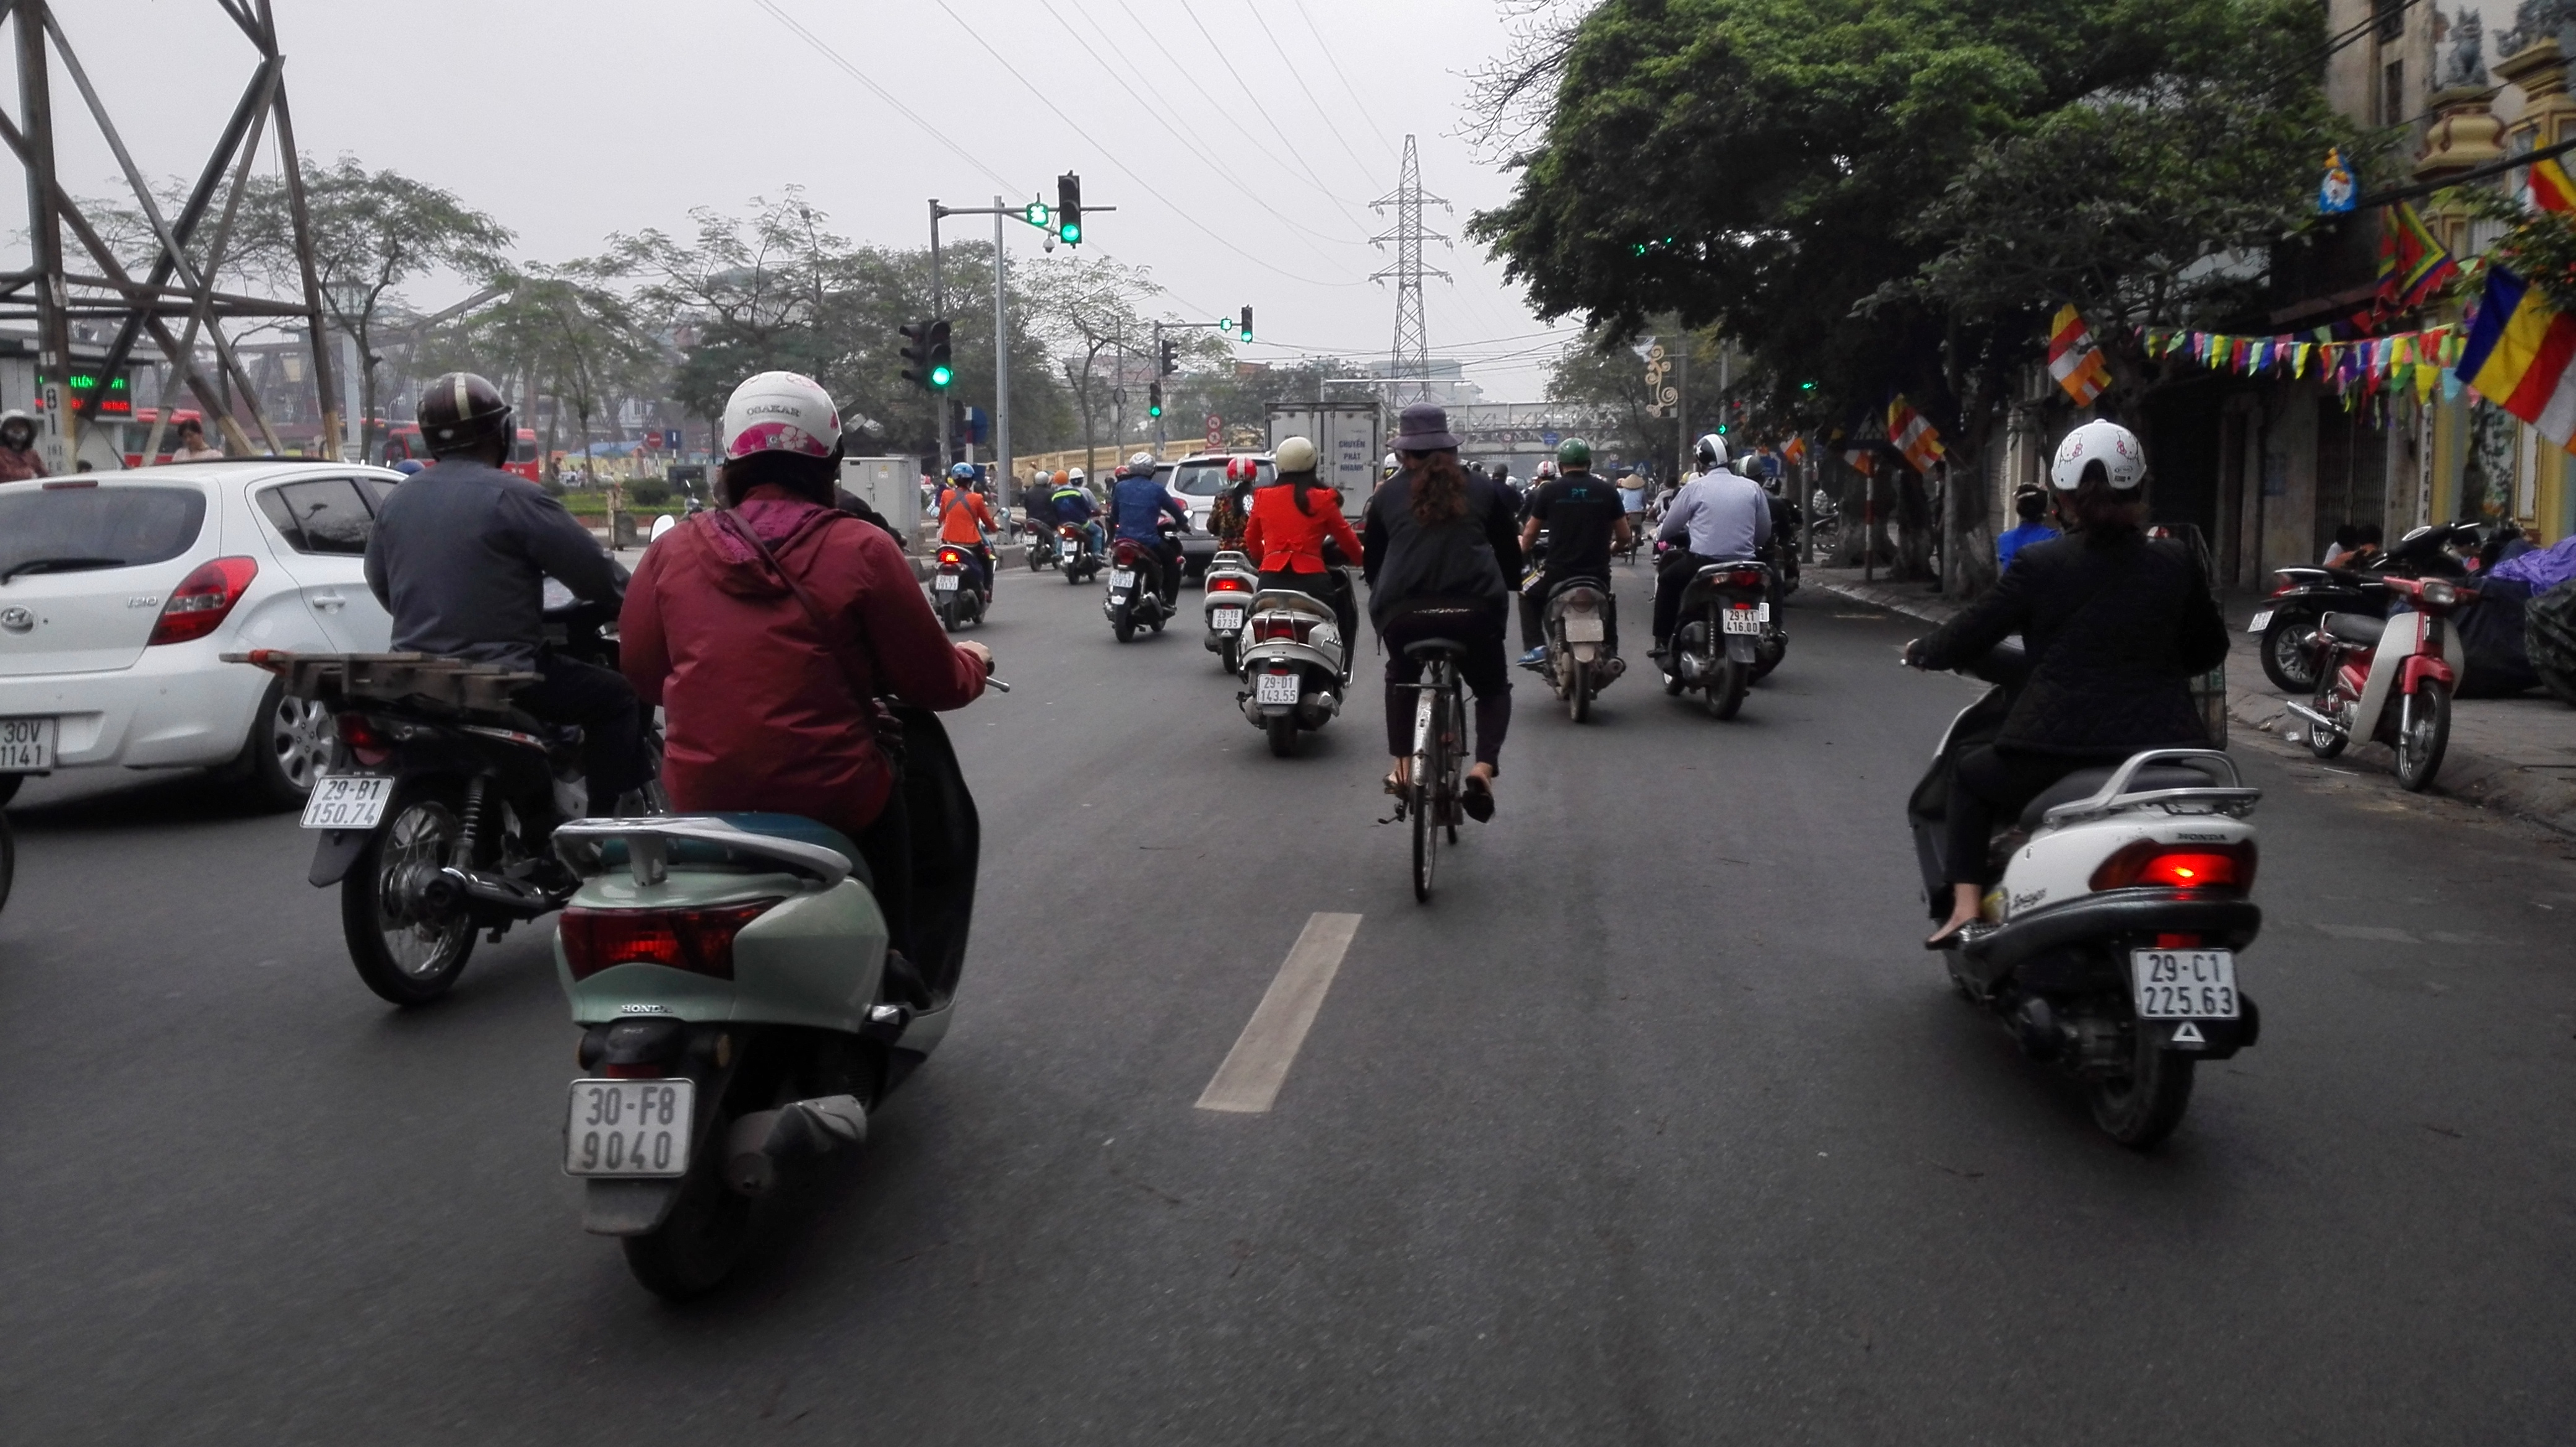 Morning commute in Hanoi